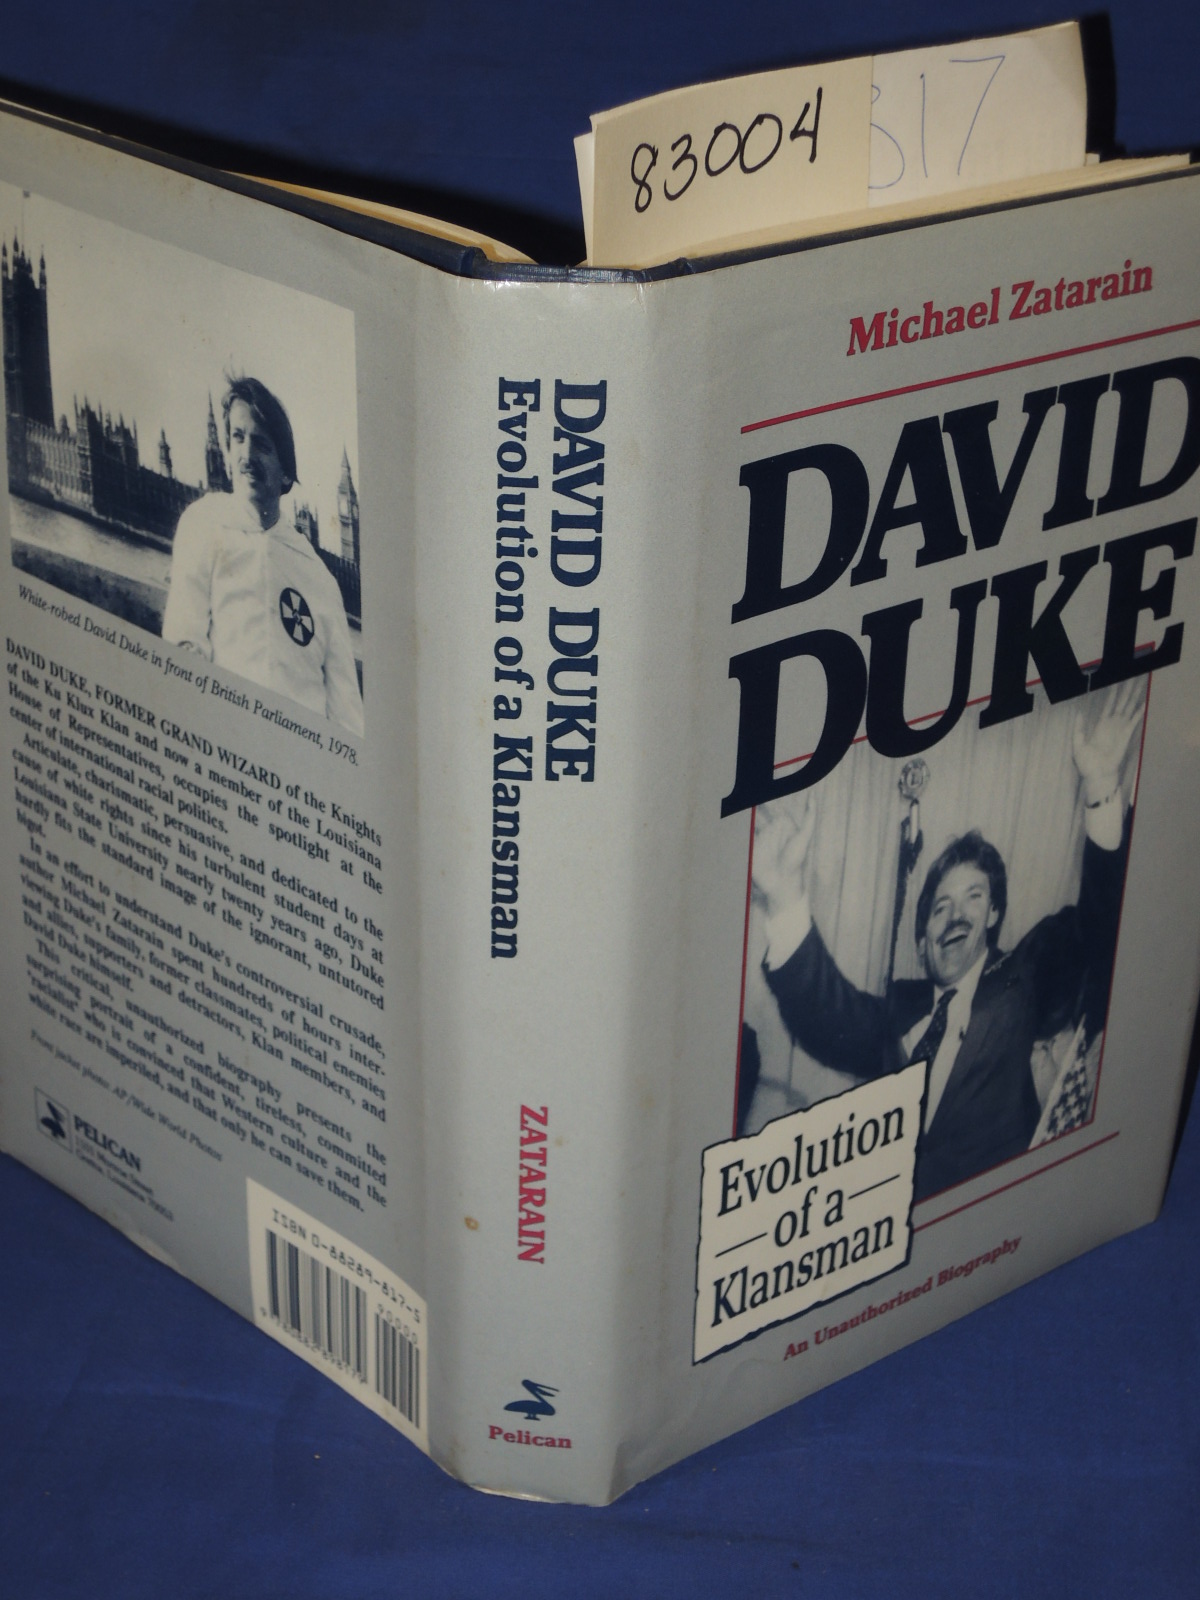 Zatarain, Michael: David Duke - Evolution of a Klansman